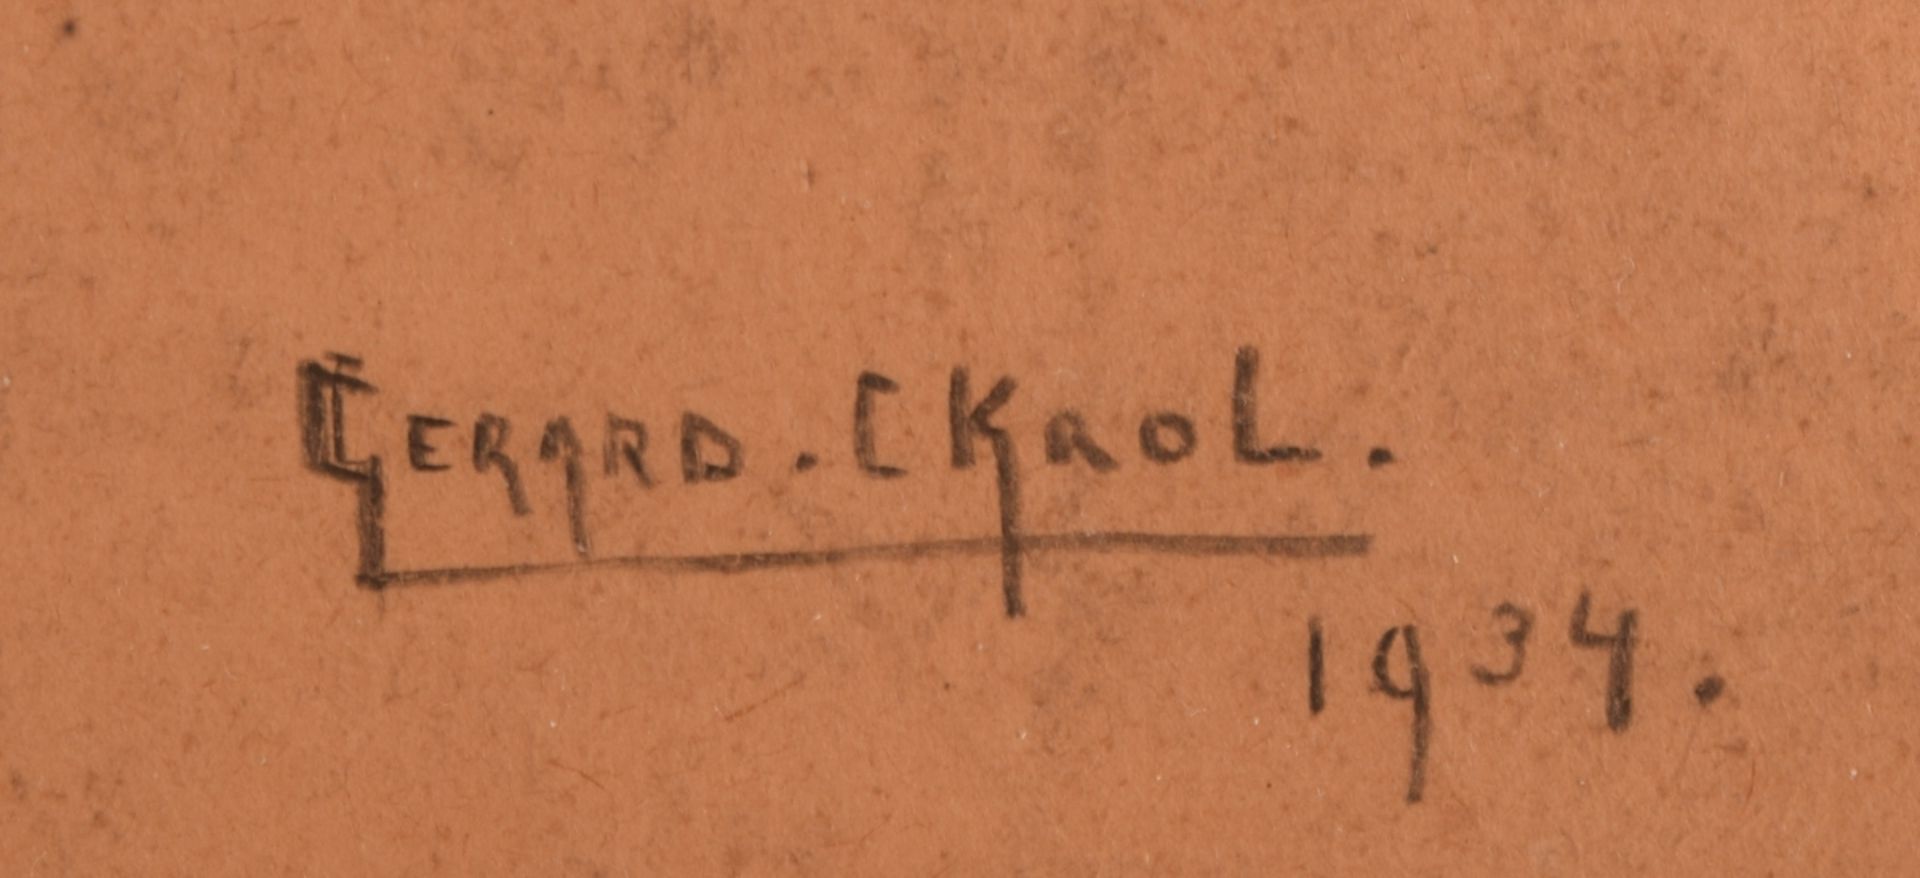 Ckaol, Gerard Blei auf braunem Zeichenpapier, Mädchenbildnis, rechts unten signiert und datiert 19 - Bild 4 aus 4